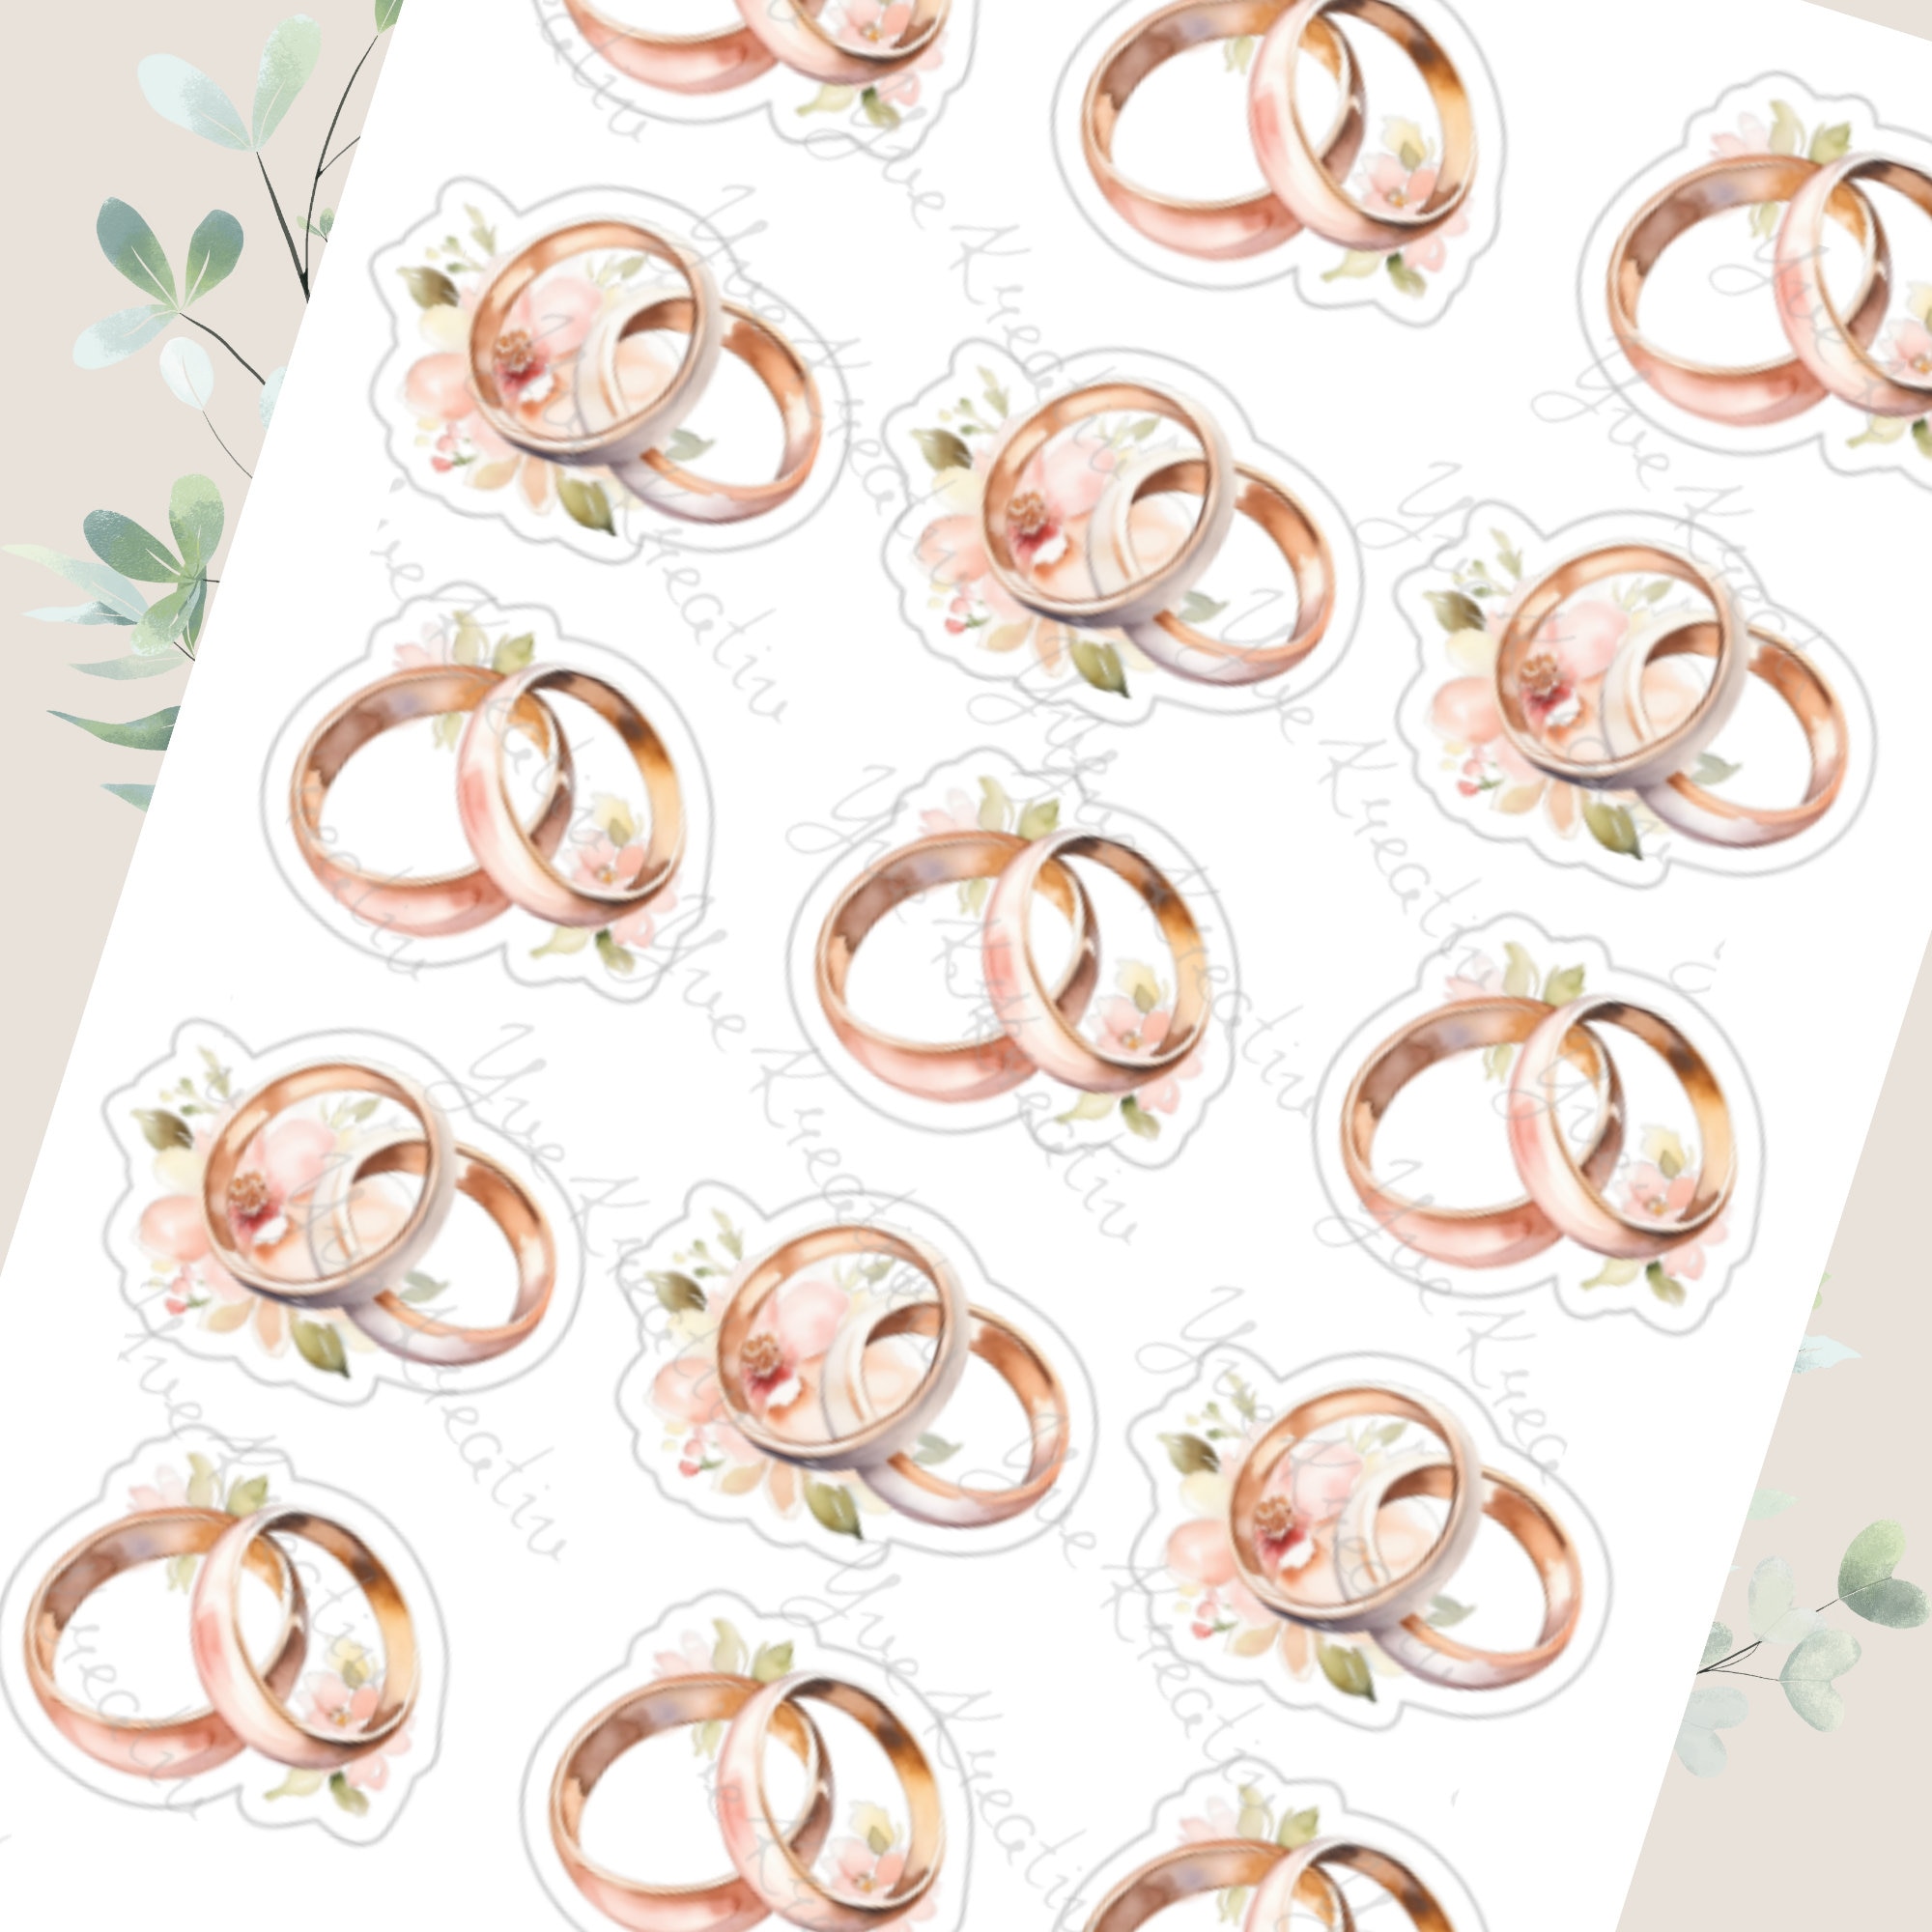 Sticker Bogen, Aufkleber, Hochzeit, Eheringe, Ringe | Sticker Set, Stickerbogen zur Auswahl in Weiß - Transparent - Matt - Glanz